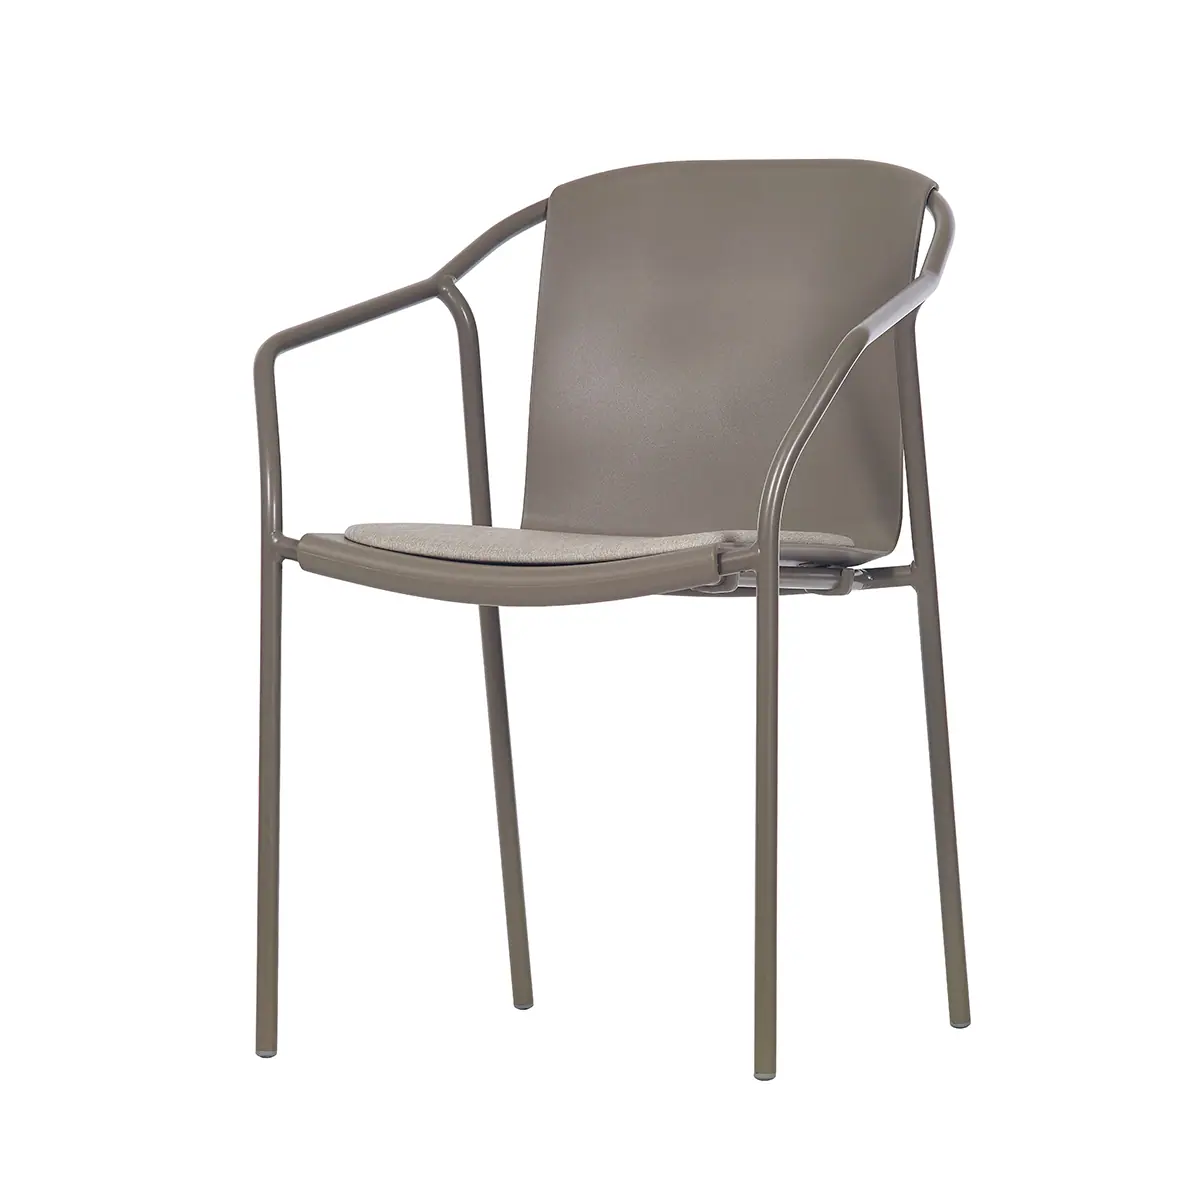 81518-81512-rod-pad-chair